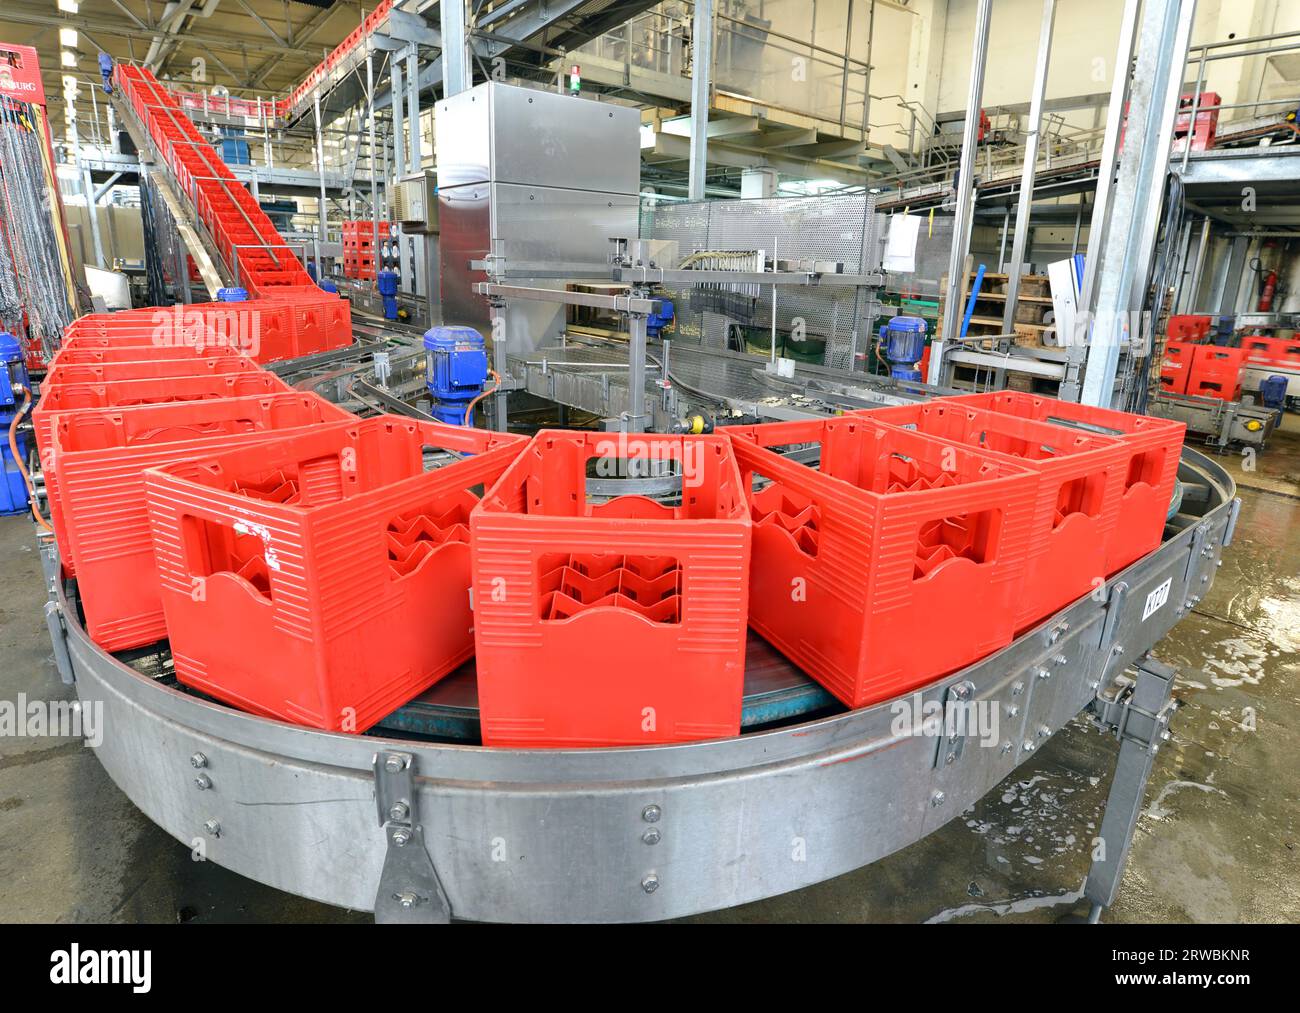 Moderne Fabrik in der Lebensmittelindustrie - Bier Brauerei - Transportband mit Bierflaschen und Maschinen für die Produktion Stockfoto